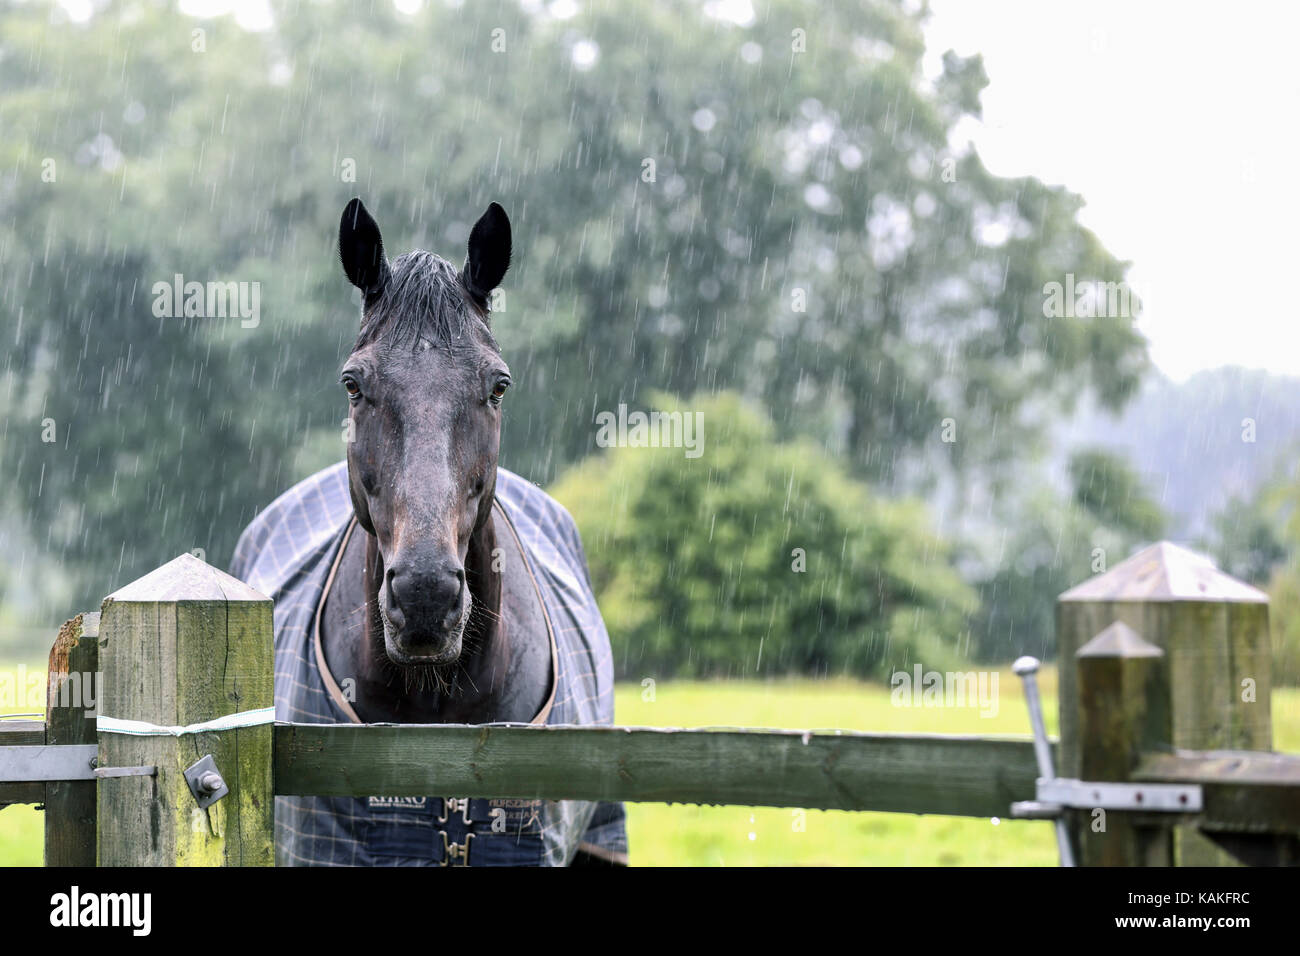 Ein Regen durchnässt Thoroughbredpferd über eine hölzerne Tor bei einem starken Regen Sturm sieht. Das Pferd hat sich in einem eingezäunten Koppel Links zu grasen. Stockfoto